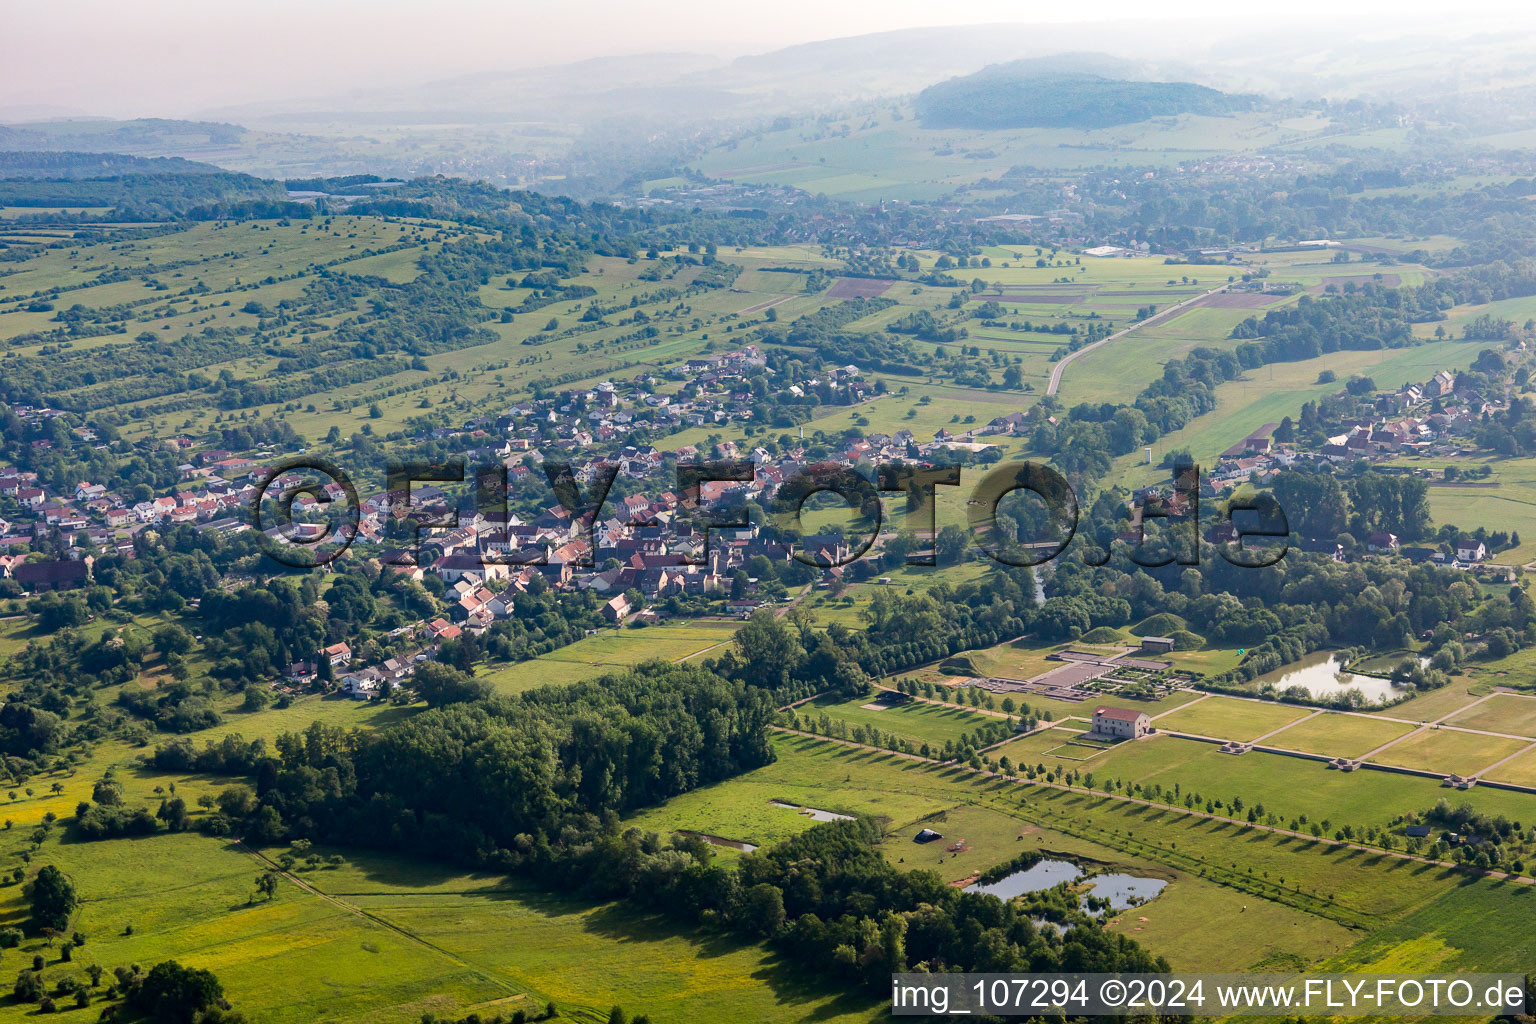 Vue aérienne de Parc culturel européen Bliesbruck-Reinheim à le quartier Reinheim in Gersheim dans le département Sarre, Allemagne